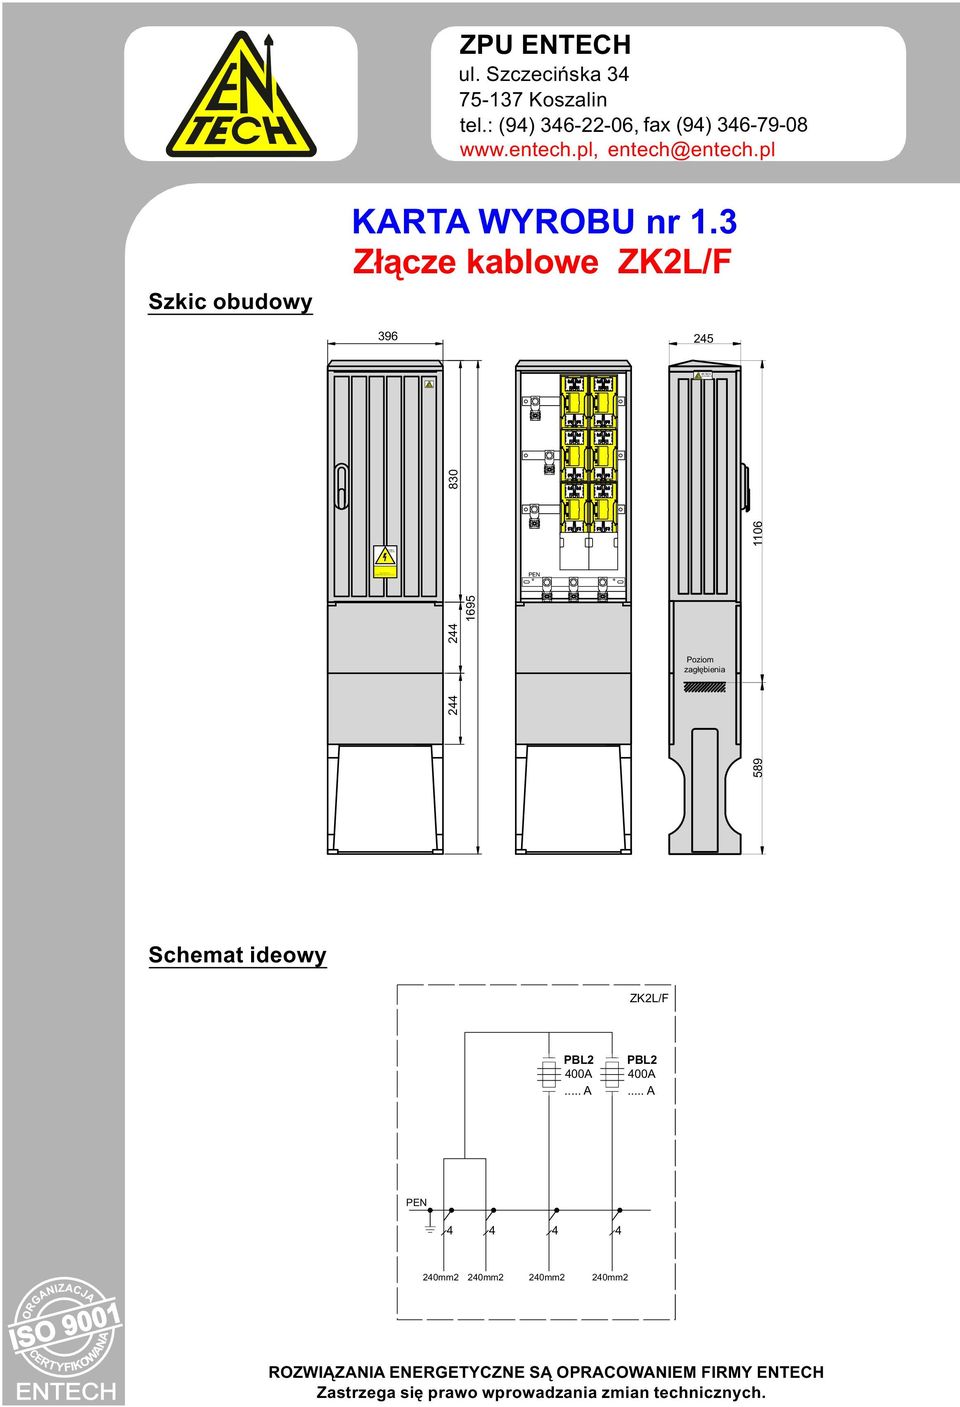 3 Złącze kablowe ZK2L/ 396 25 2 2 830 1695 Poziom zagłębienia 1106 589 Schemat ideowy ZK2L/